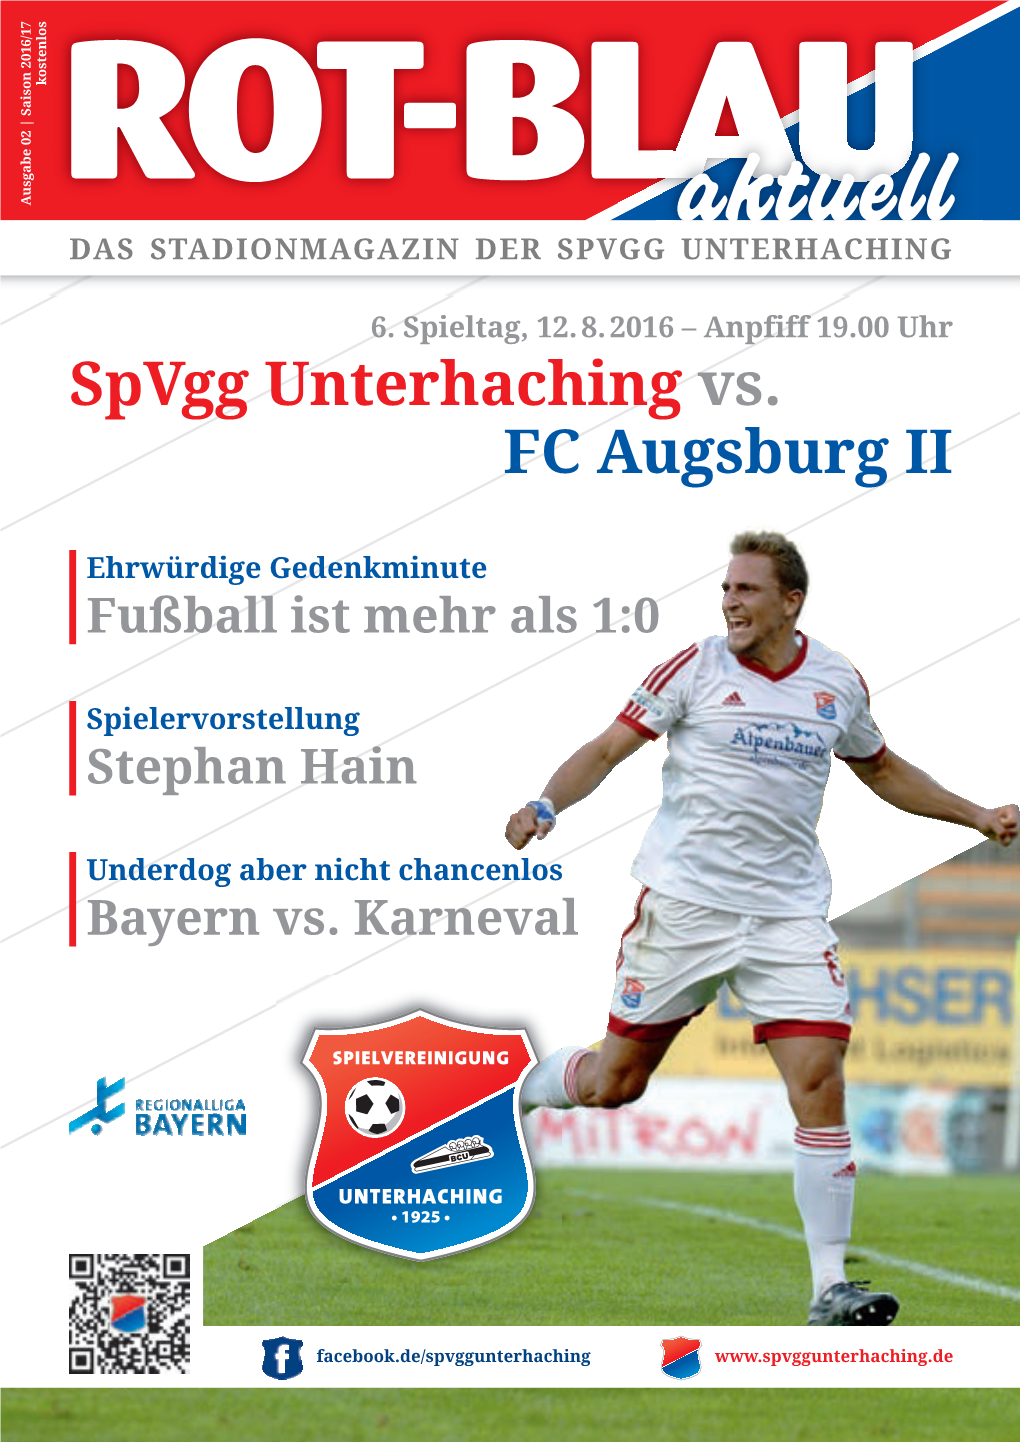 Spvgg Unterhaching Stadionmagazin 2016/2017 Nr. 02 09.08.16 08:13 Seite 1 Kostenlos Ausgabe 02 | Saison 2016/17 Ausgabe